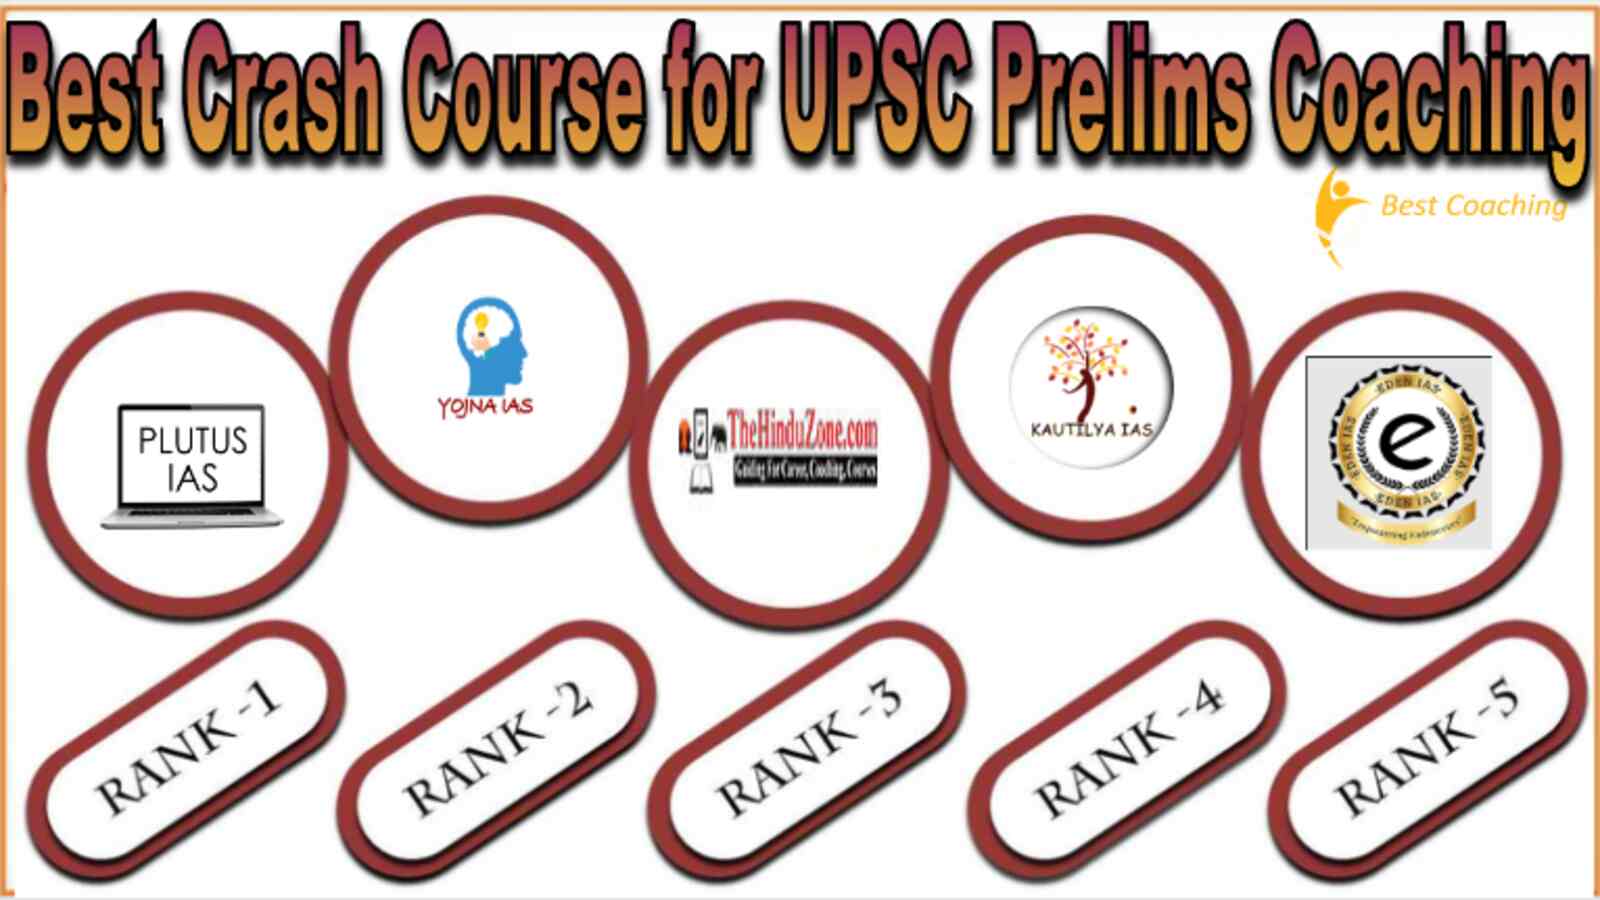 Best Crash Course for UPSC Prelims Coaching